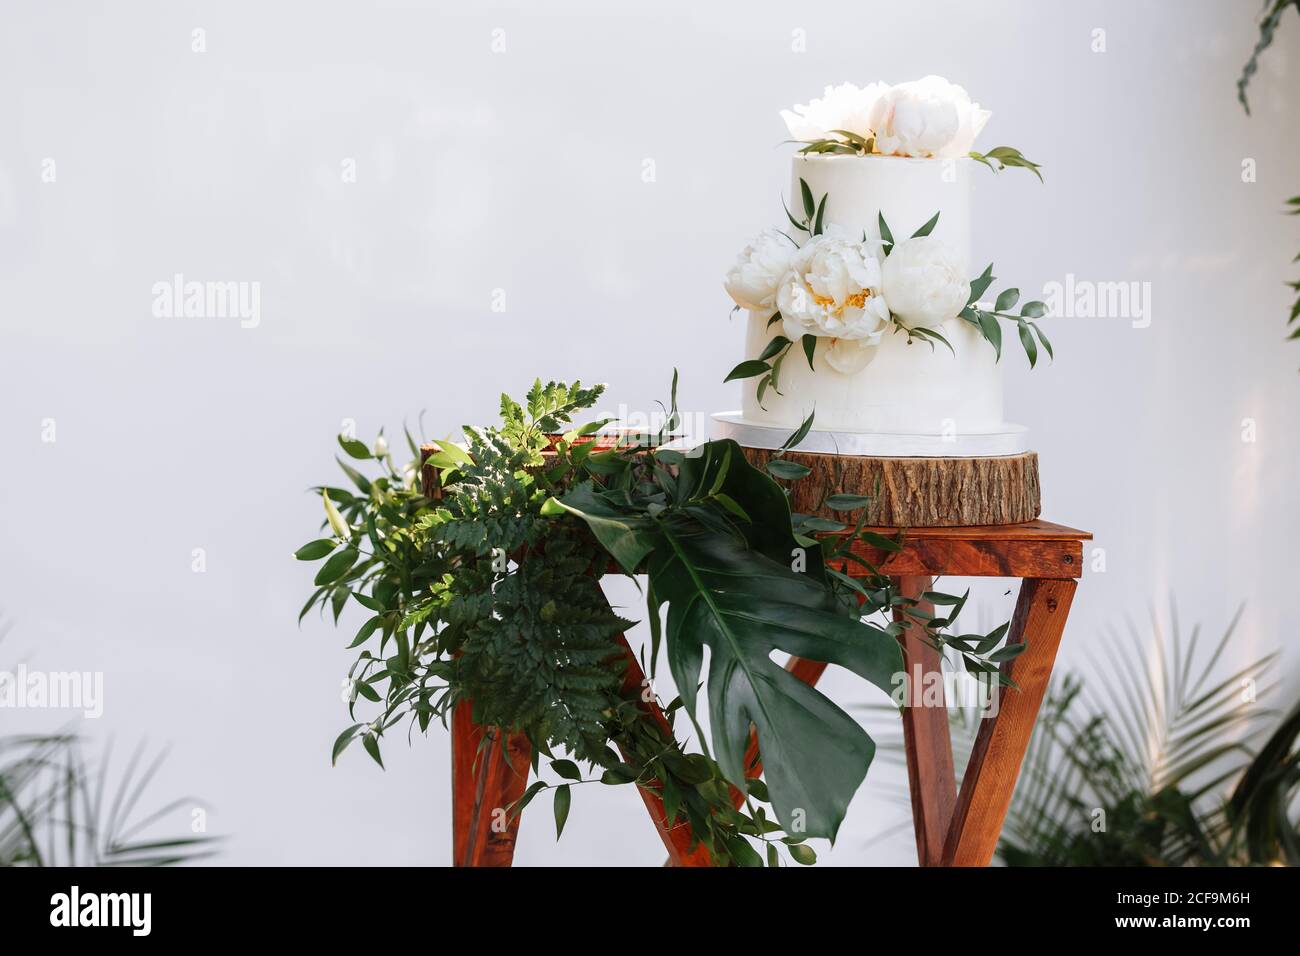 Gâteau de mariage élégant avec fleurs et succulents. Gâteau de mariage blanc à deux niveaux avec fleurs sur une table en bois Banque D'Images